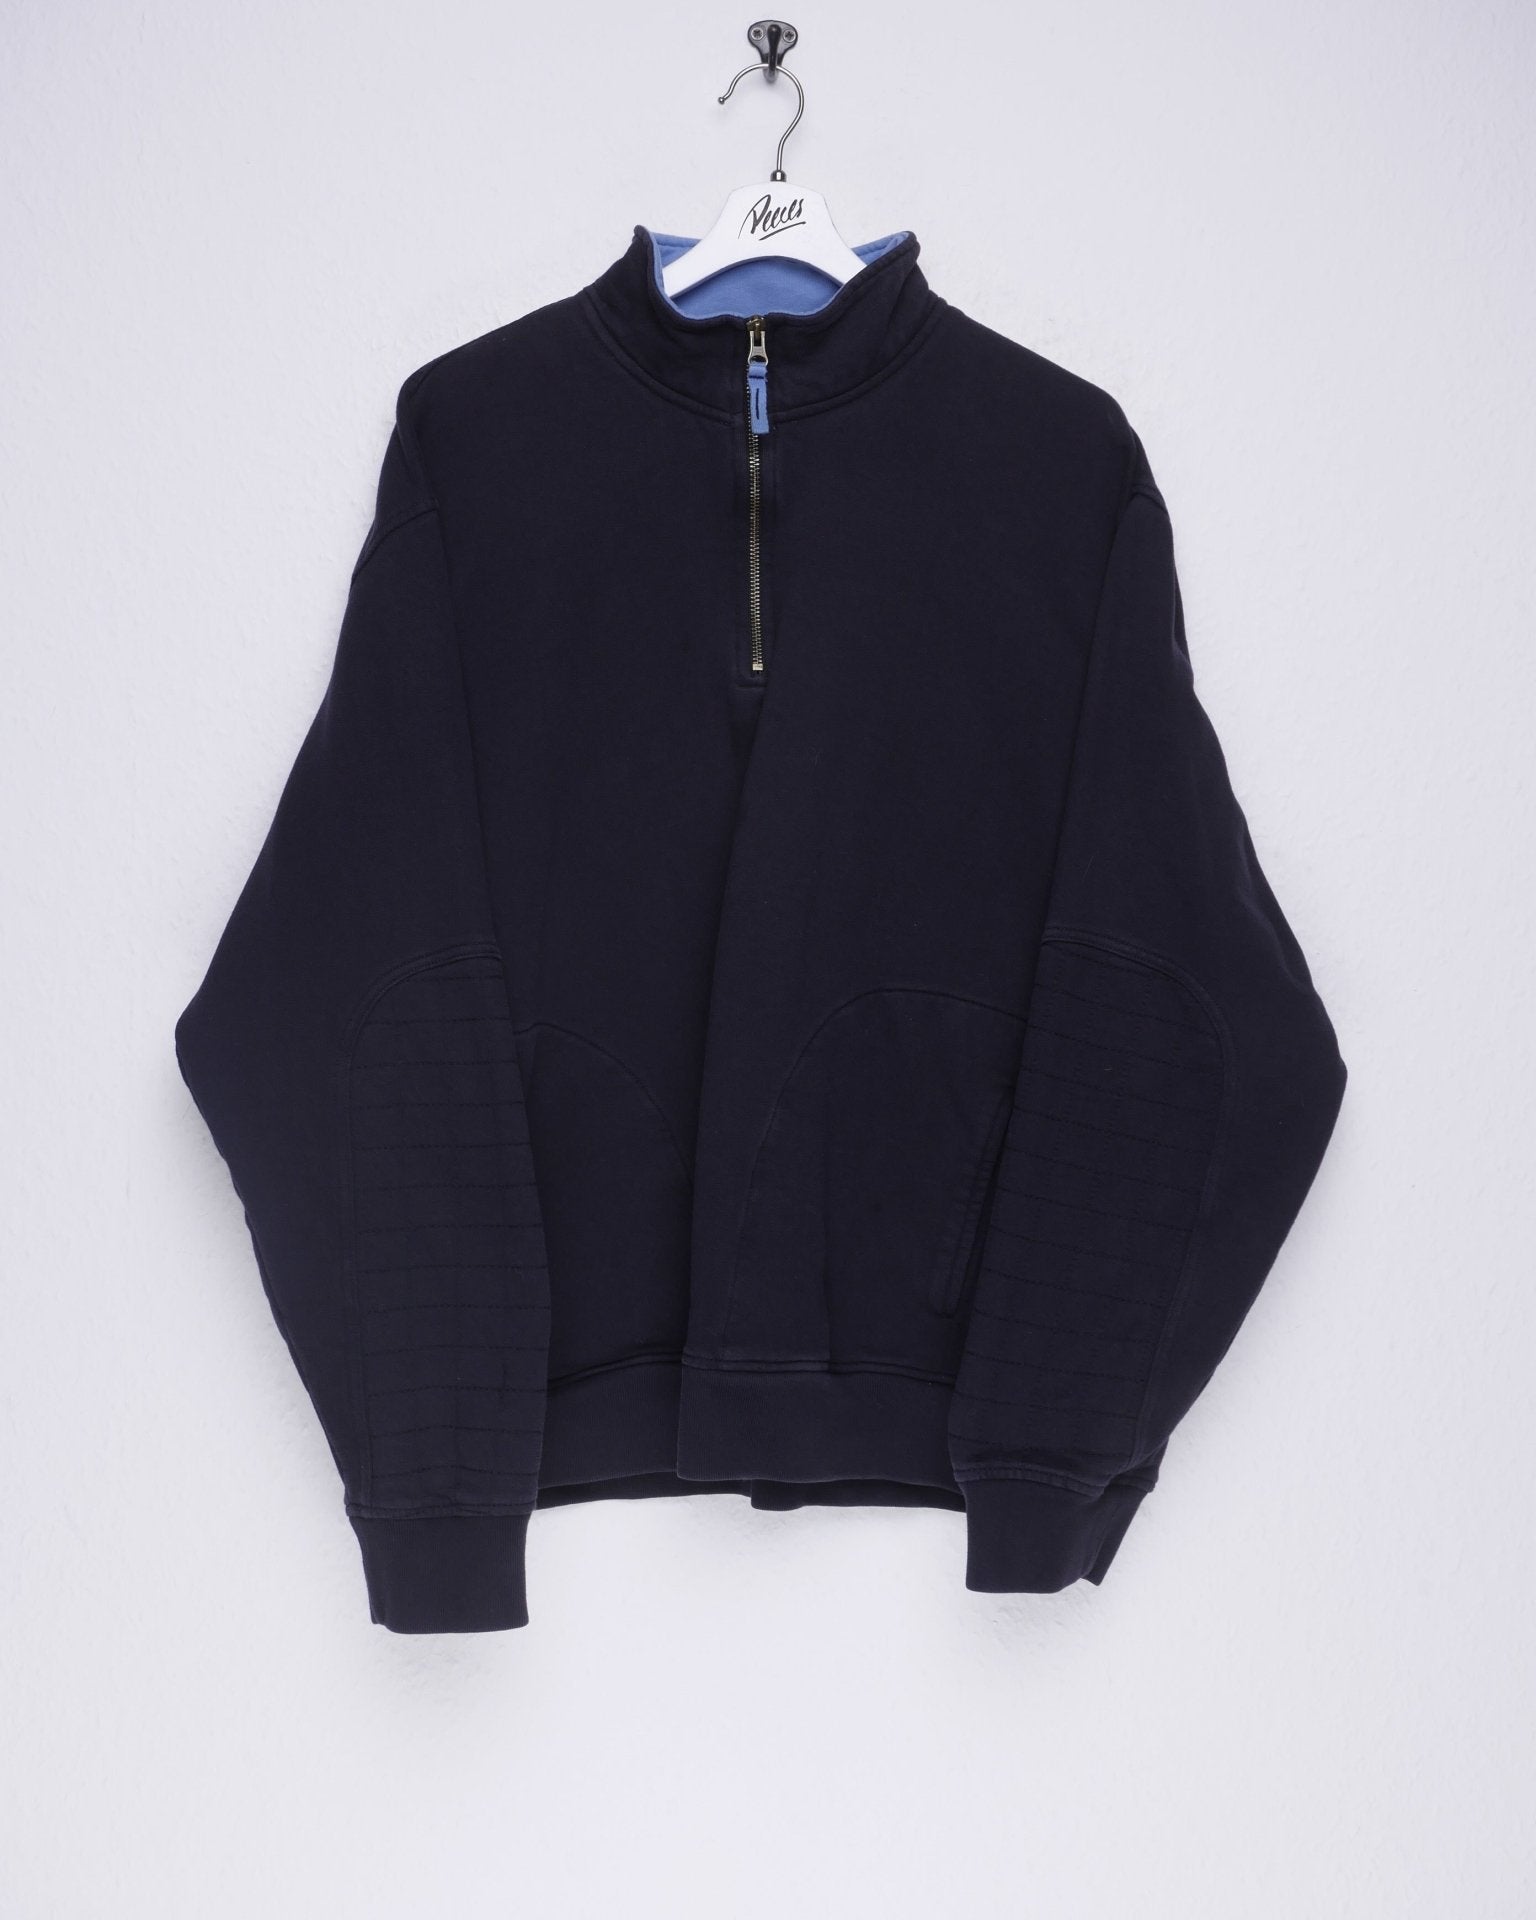 Vintage Half Zip Sweater - Peeces